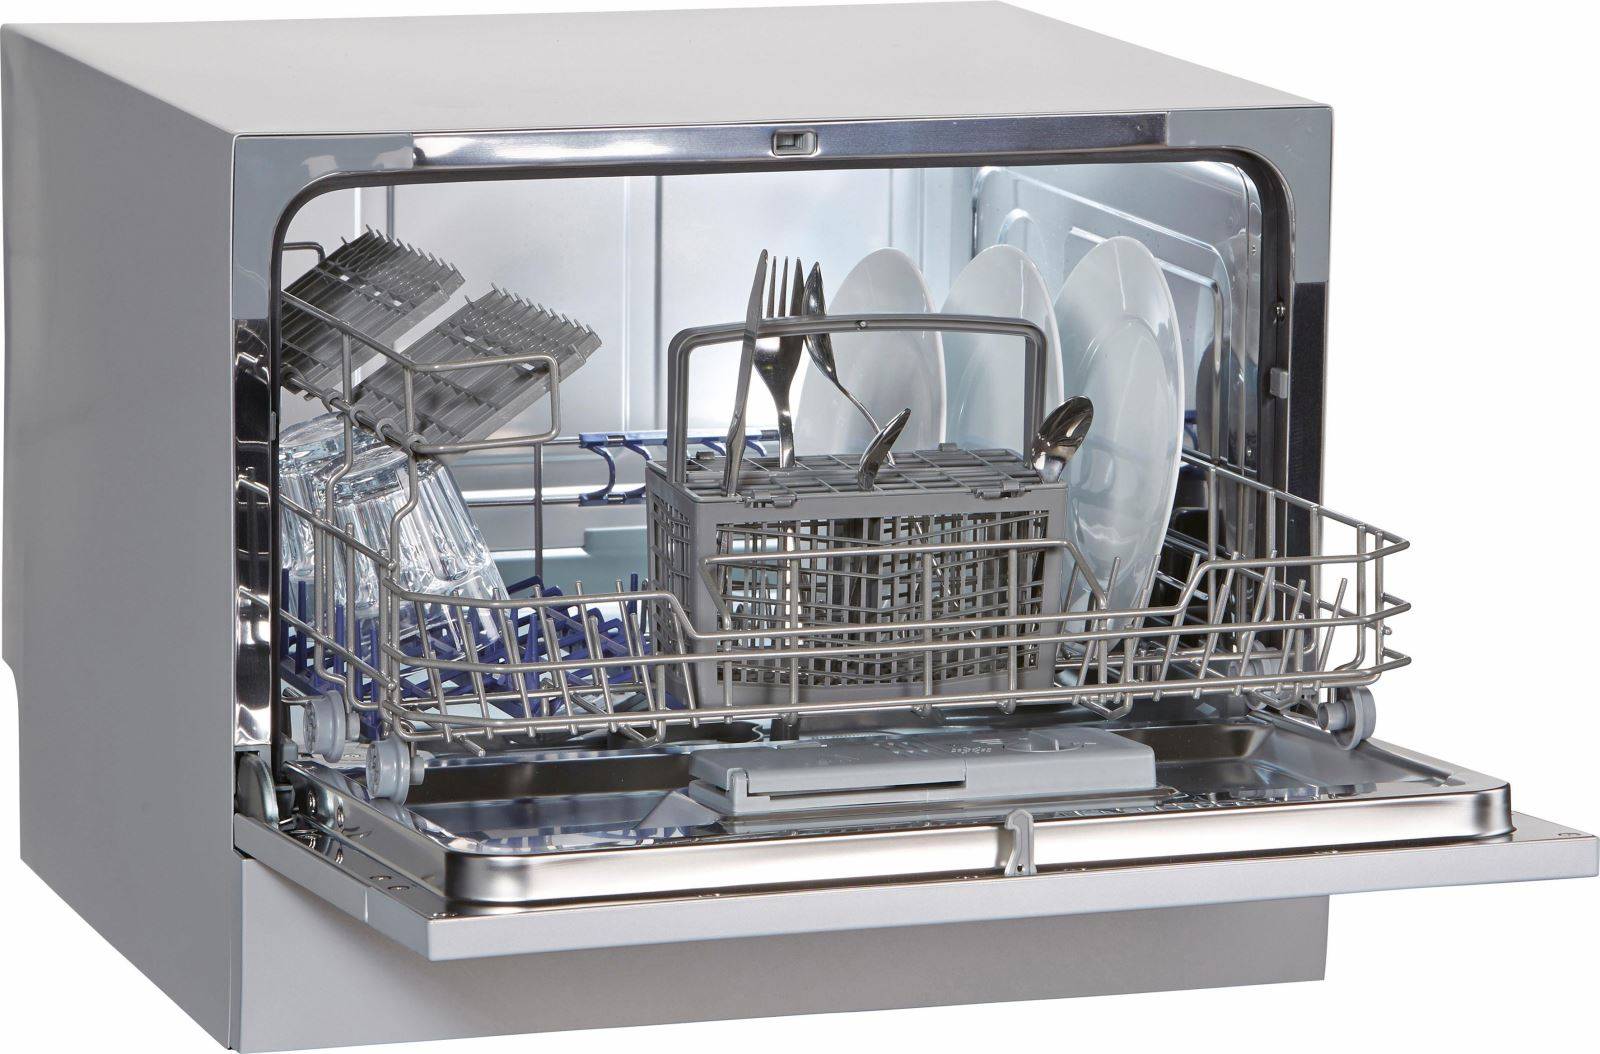 ✅ запчасти для посудомоечных машин: какие бывают и как выбрать - dnp-zem.ru